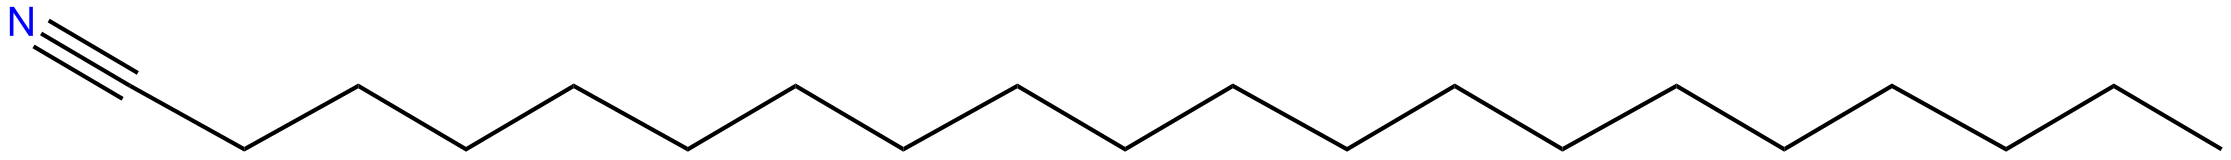 Image of icosanenitrile